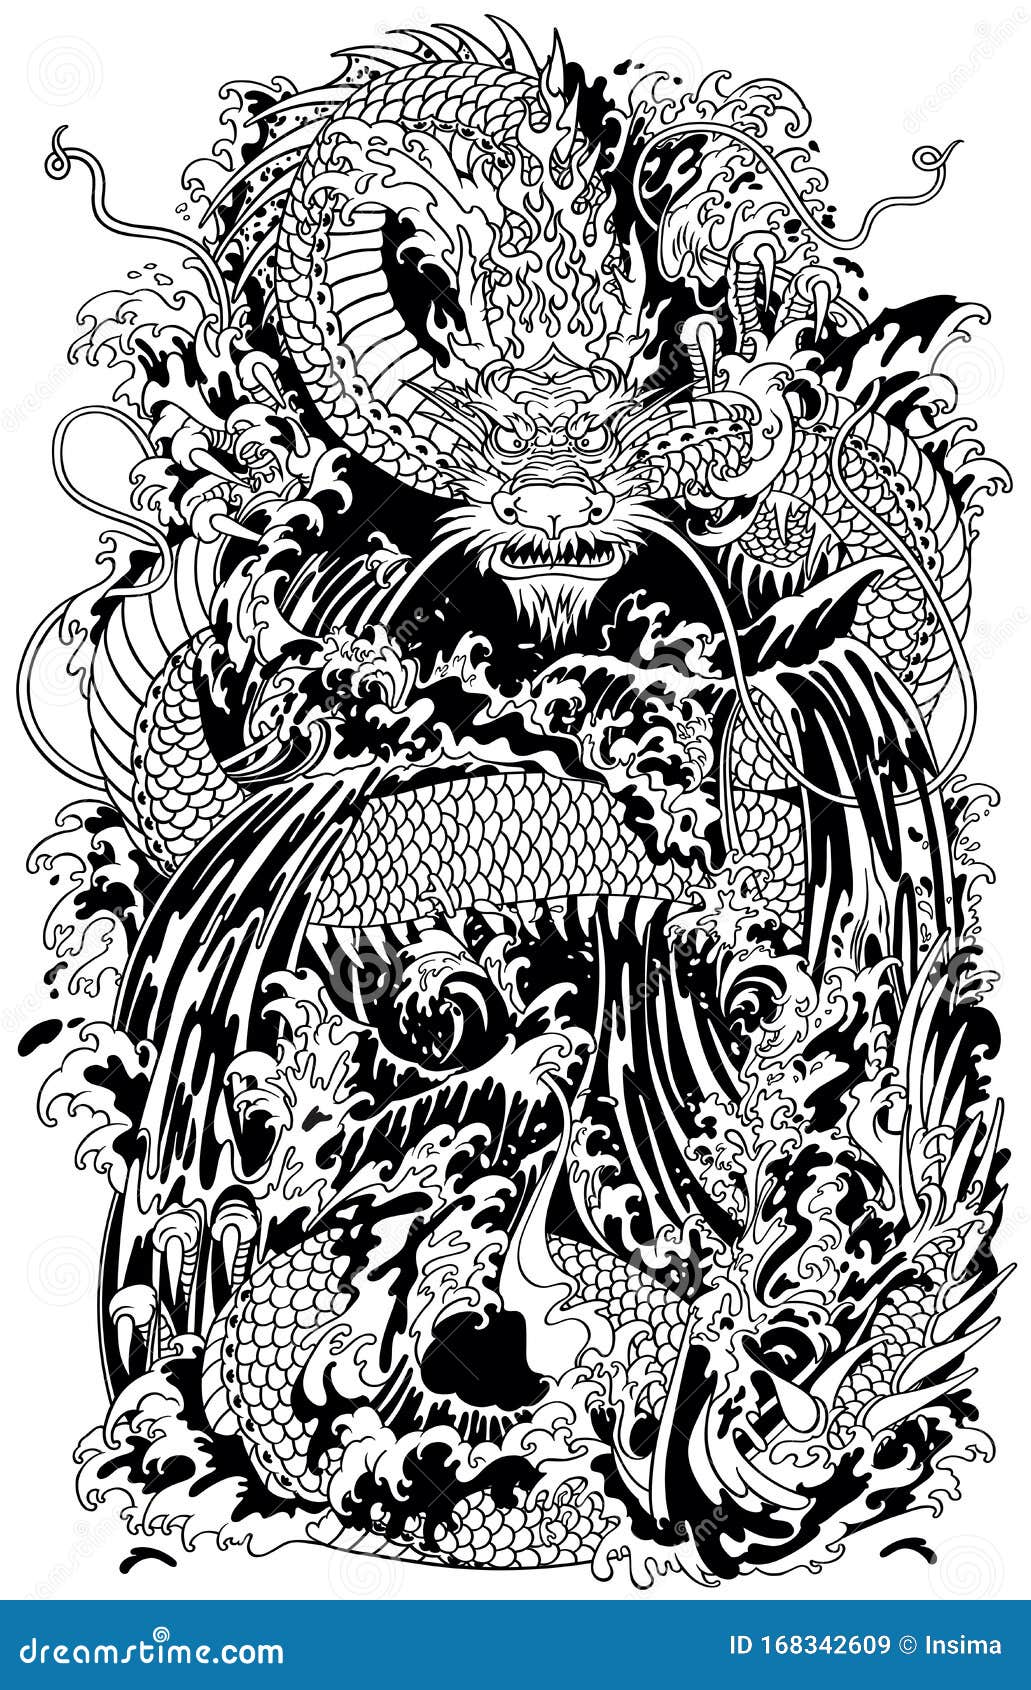 Dragão segurando pérola preto branco imagem vetorial de insima© 61939449